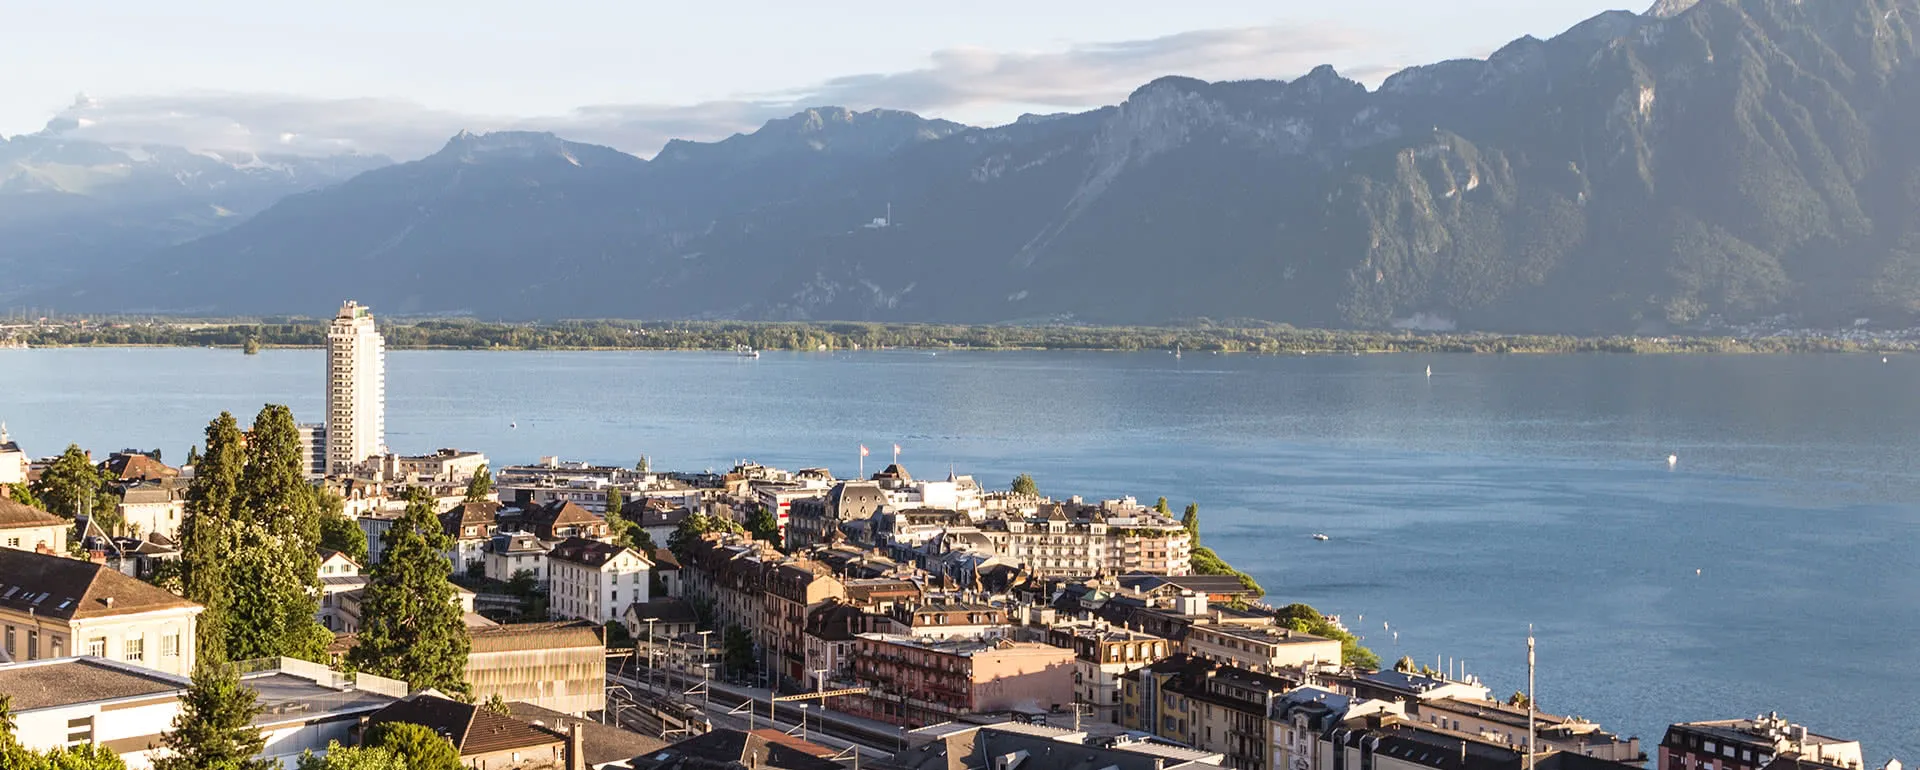 Montreux - the destination for school trips